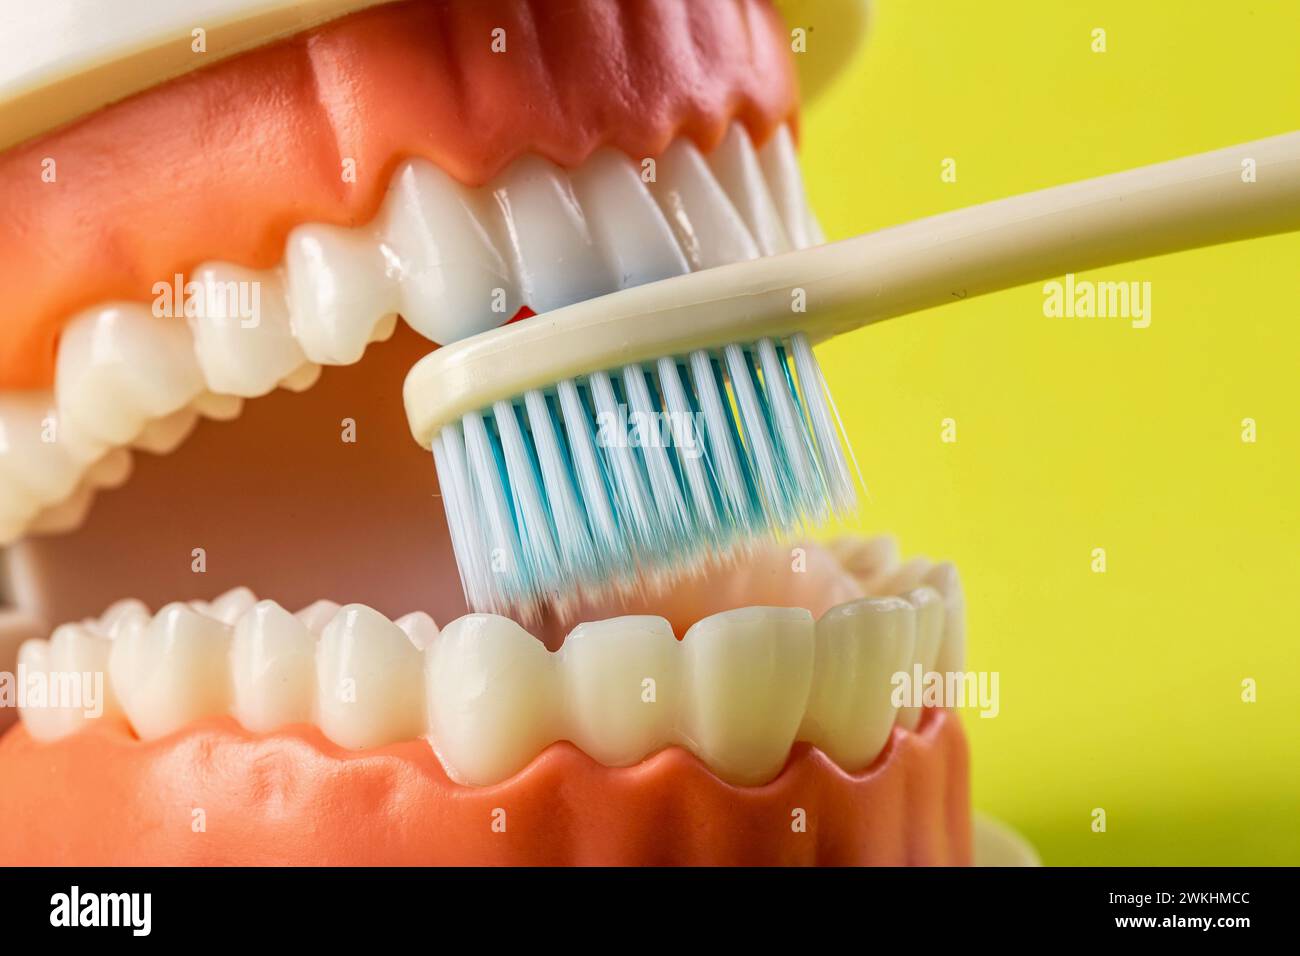 Uno spazzolino blu pulisce i denti nella cavità orale di un mockup dentario su sfondo giallo. Concetto di cura e igiene per denti e gengive. Preve Foto Stock